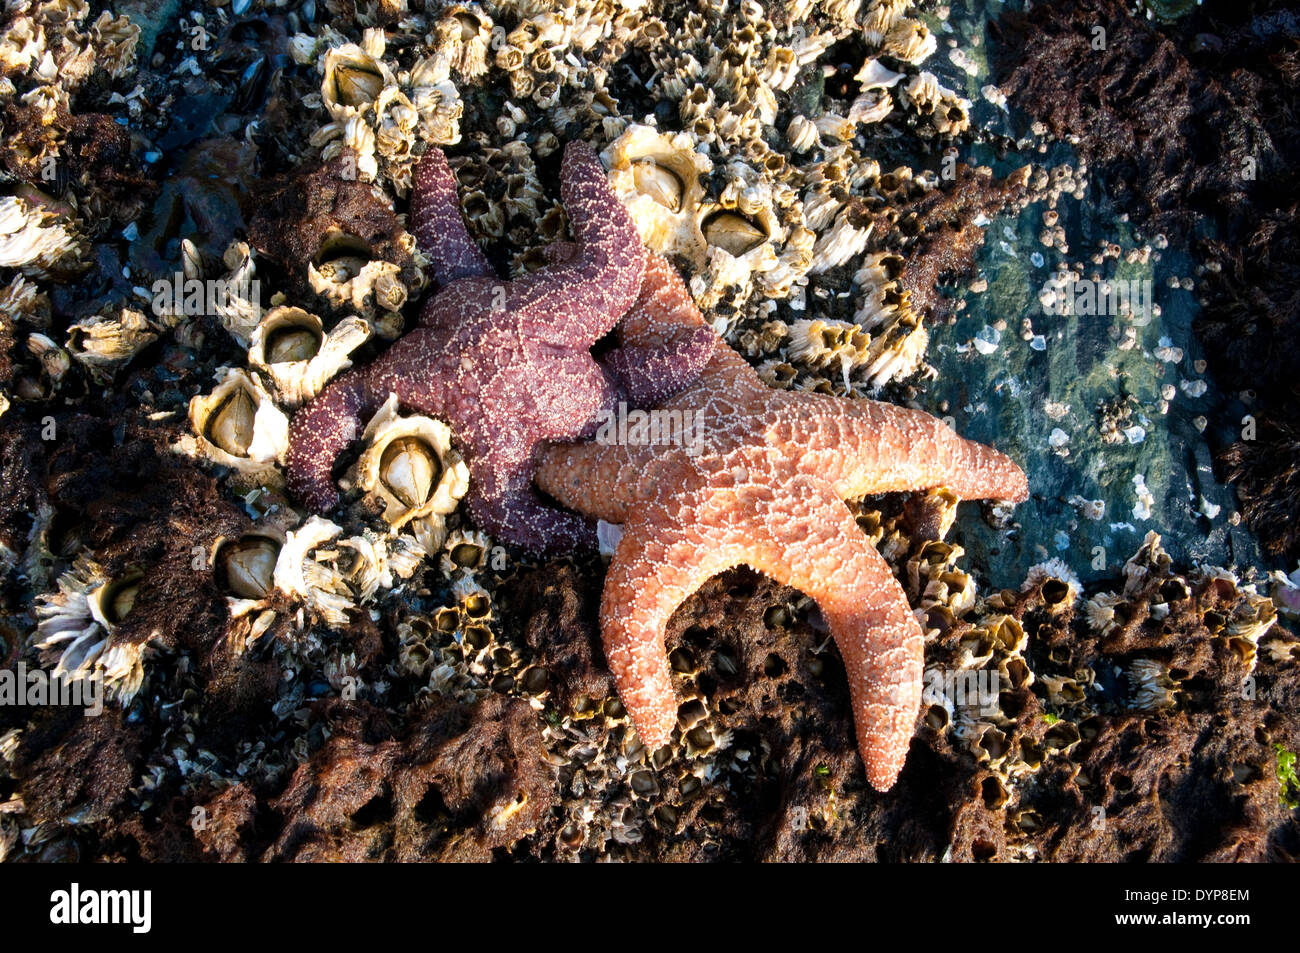 Deux étoiles de mer sur des roches couvertes de barnacle dans une zone intertidale de l'océan Pacifique dans la forêt tropicale de Great Bear, Colombie-Britannique, Canada. Banque D'Images